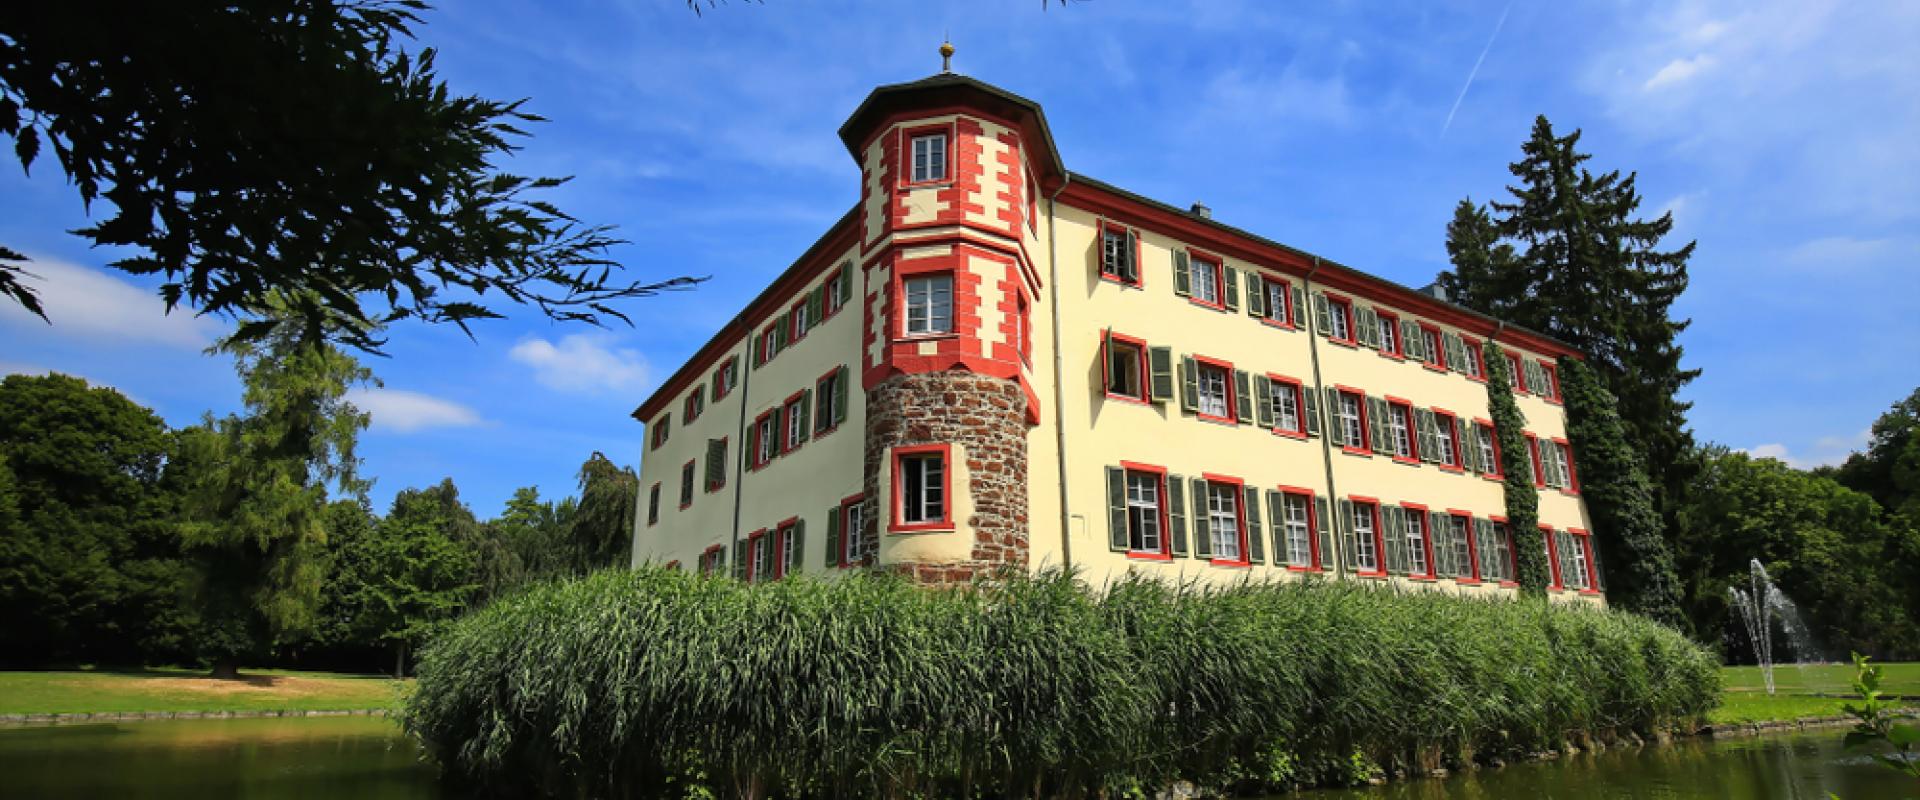 Eichtersheimer Schloss 